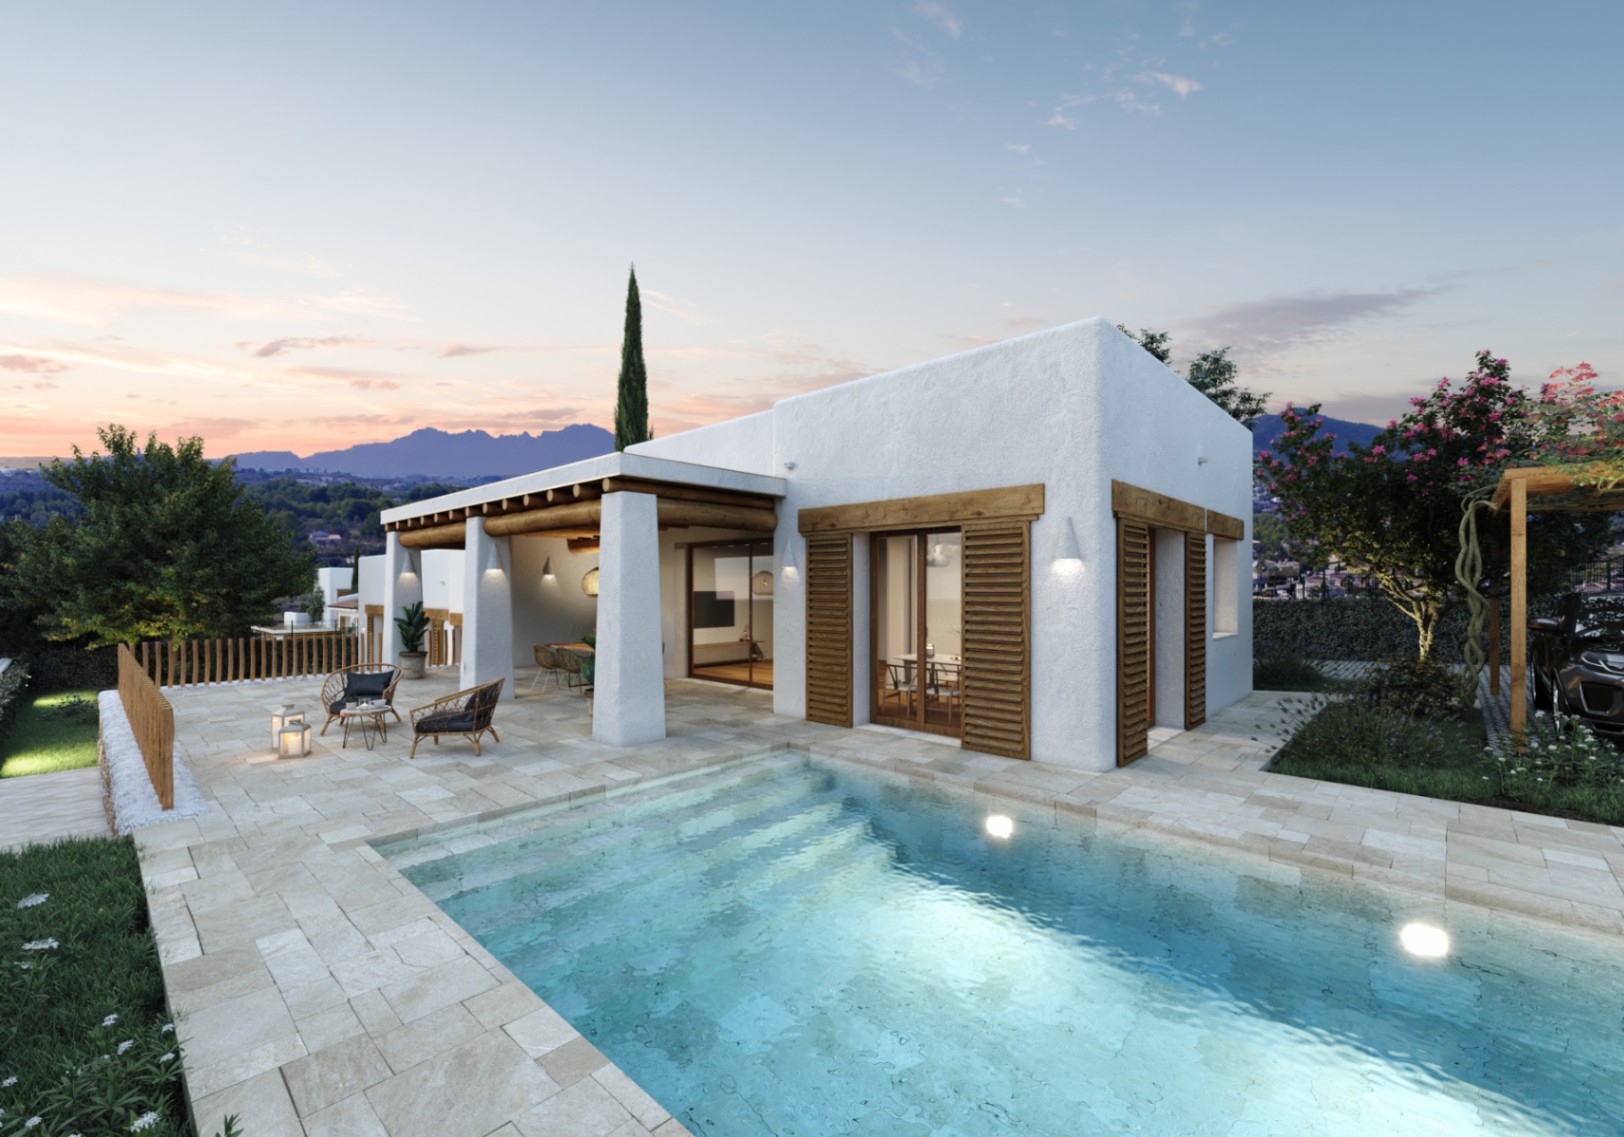 New build Ibizan style villa for sale in Las Lomas del Rey Jávea, Costa Blanca